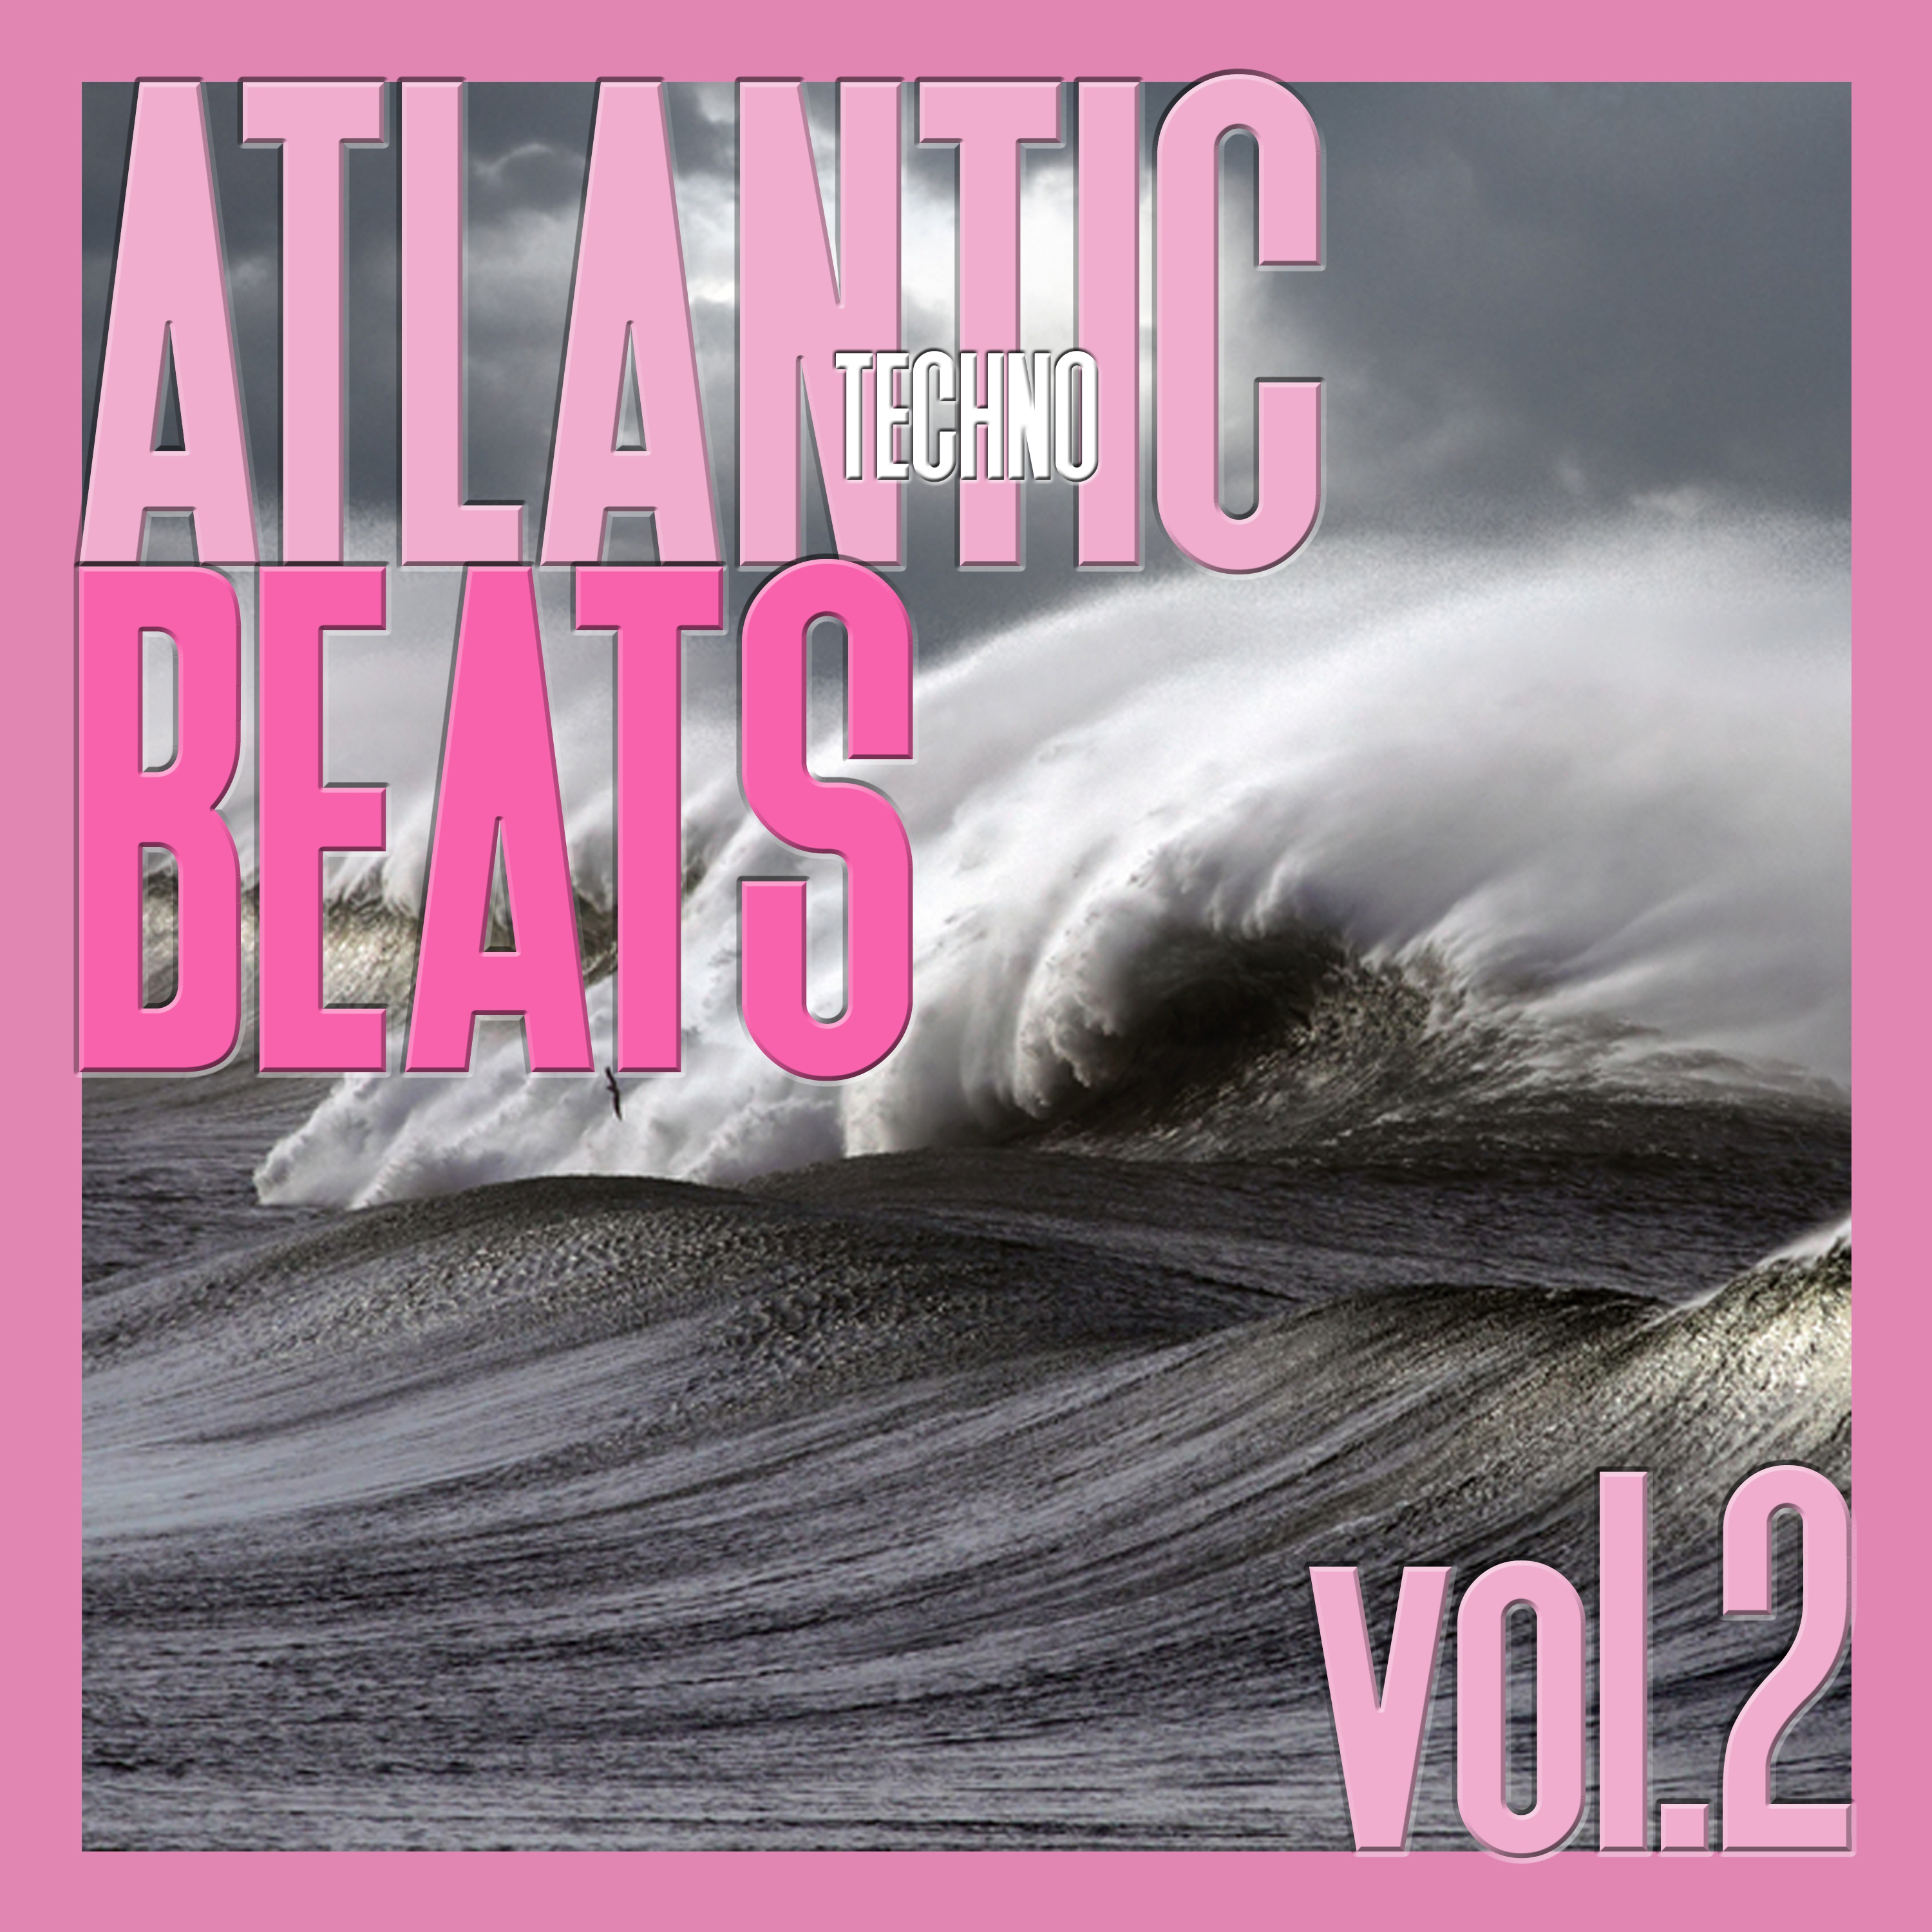 Atlantic Techno Beats, Vol. 2